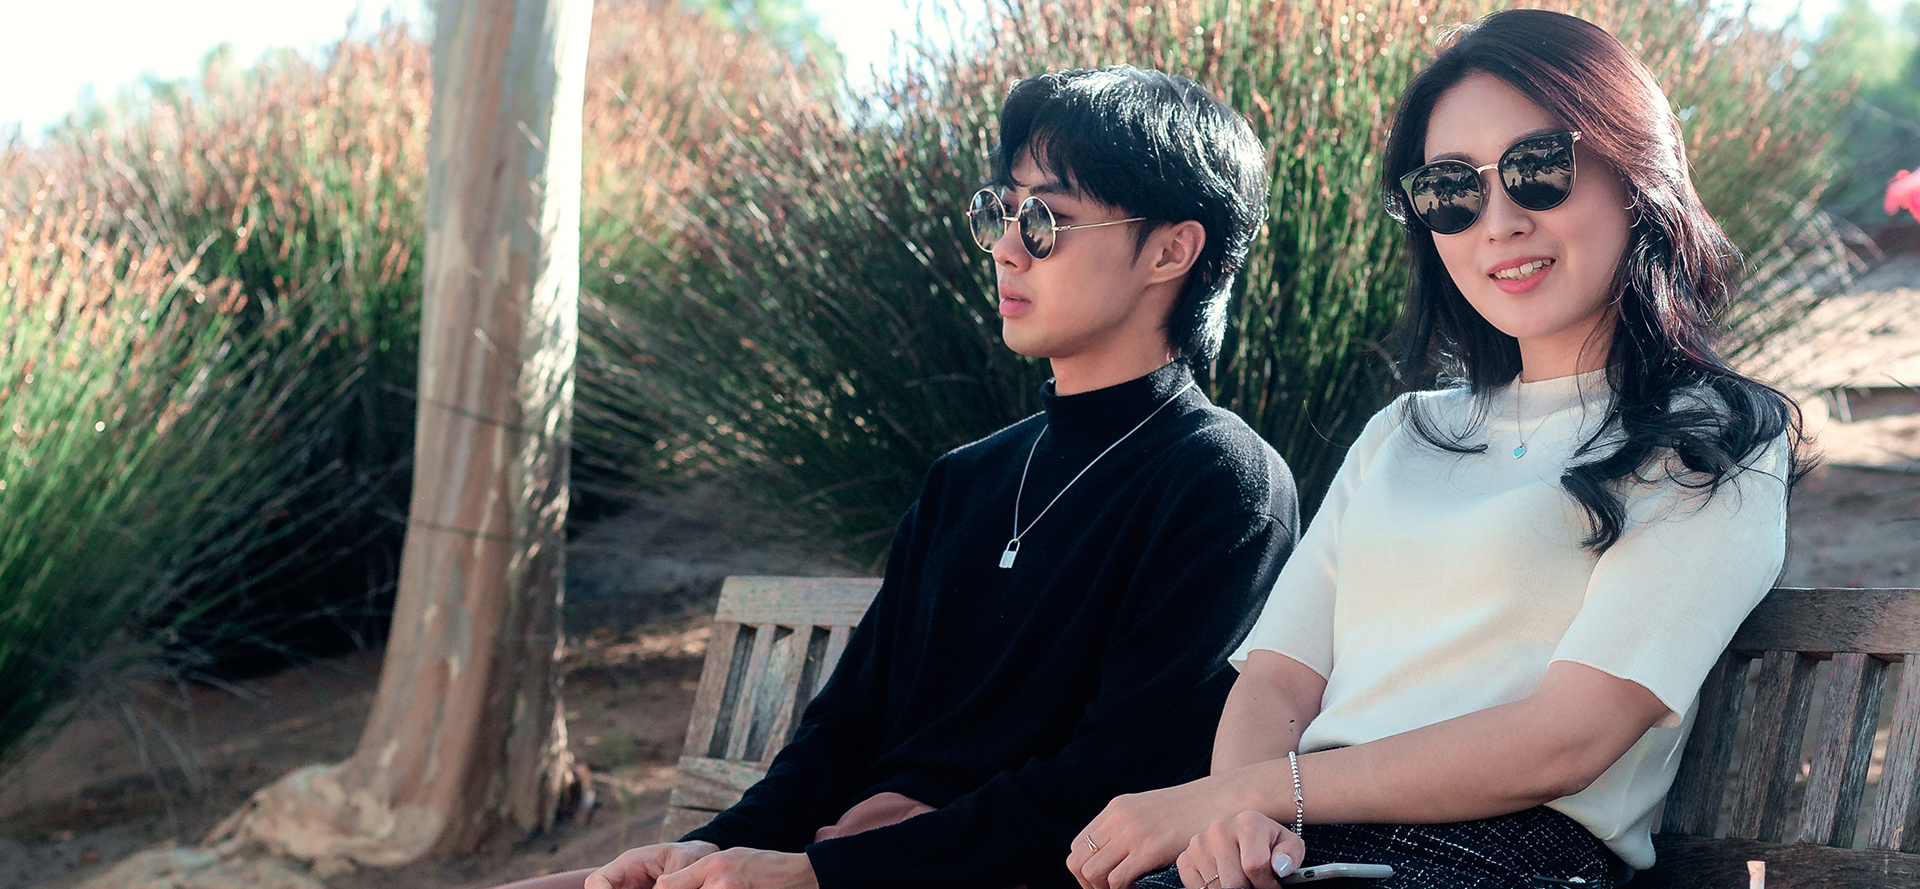 O casal asiático de óculos senta-se em um banco.